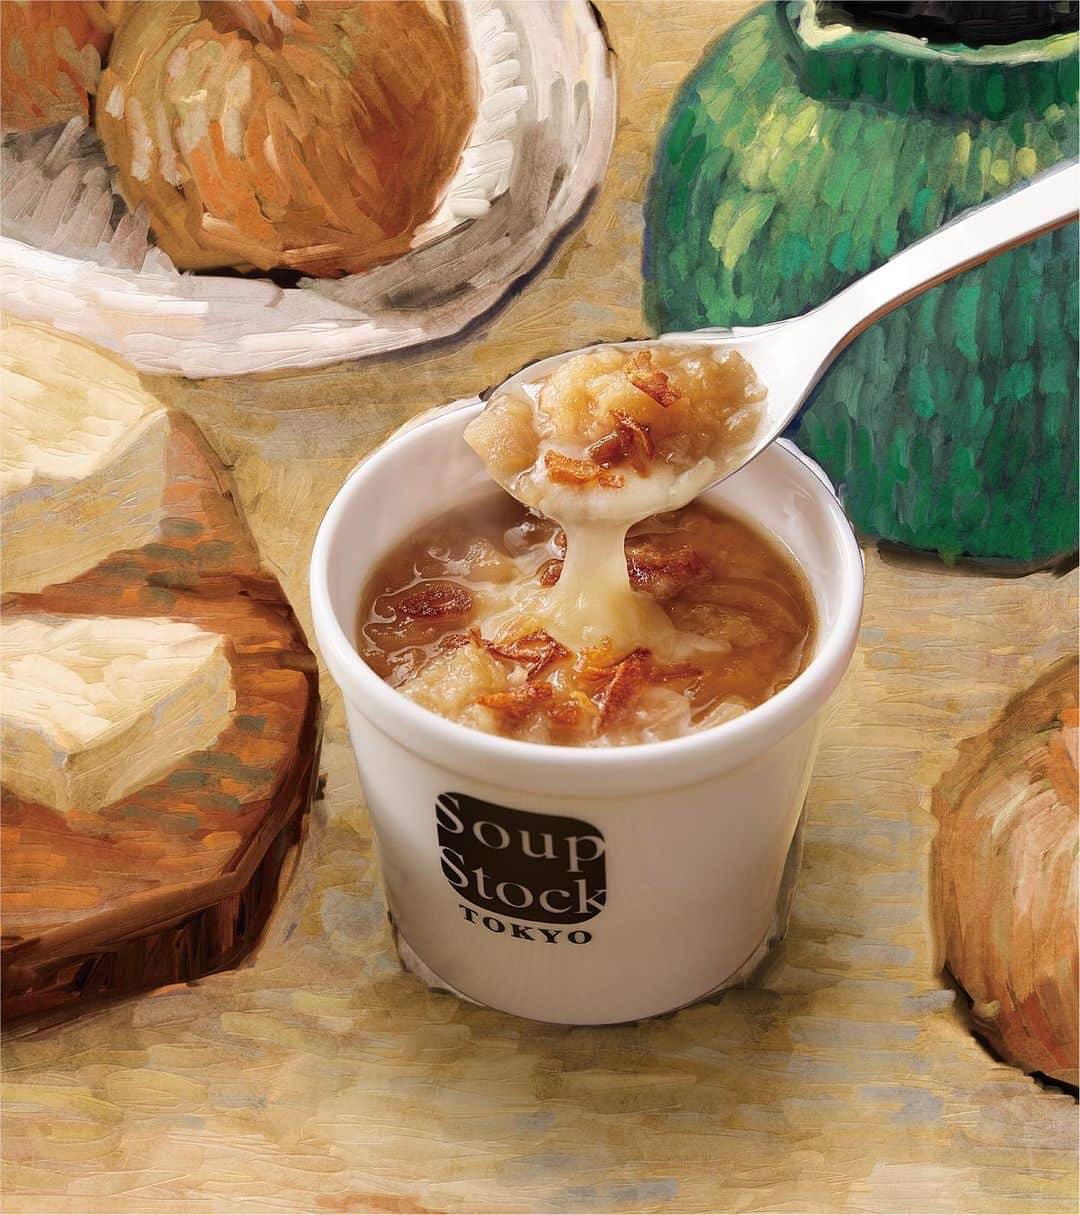 スープストックトーキョー 公式のインスタグラム：「🚩今週から登場 「#ゴッホの玉葱のスープ」🧅  飴色になるまで炒めたソテーオニオンにとろけたチーズの「#ゴッホの玉葱のスープ」はSoup Stock Tokyoの”アートから生まれたスープ”の中でも人気の作品です。   Soup Stock Tokyoでは2010年から「アート」からインスピレーションを得たスープ作りを続けています。 「玉葱の絵を描いたゴッホはどんなスープを食べていたのだろう？」 絵に込められたストーリーやアーティストの人生、文化的背景や、芸術的挑戦を丁寧に読み解きスープに込めています。  この秋にご用意したのは、ゴッホが描いた生命力あふれる玉葱に着想を得た「#ゴッホの玉葱のスープ」。私たちと作品の出会いから生まれたSoup Stock Tokyoだけで味わえるスープです。店頭では、「アート」から生まれたスープの話にまつわるリーフレットもご用意しています。ぜひスープと一緒にご覧ください。   気温も下がってきて、鼻先から秋らしい空気を感じられるようになりました。一杯のスープから「アートの秋」をお楽しみいただけたら嬉しいです。  #スープストックトーキョー#soupstocktokyo #アートの秋#アートスープ」